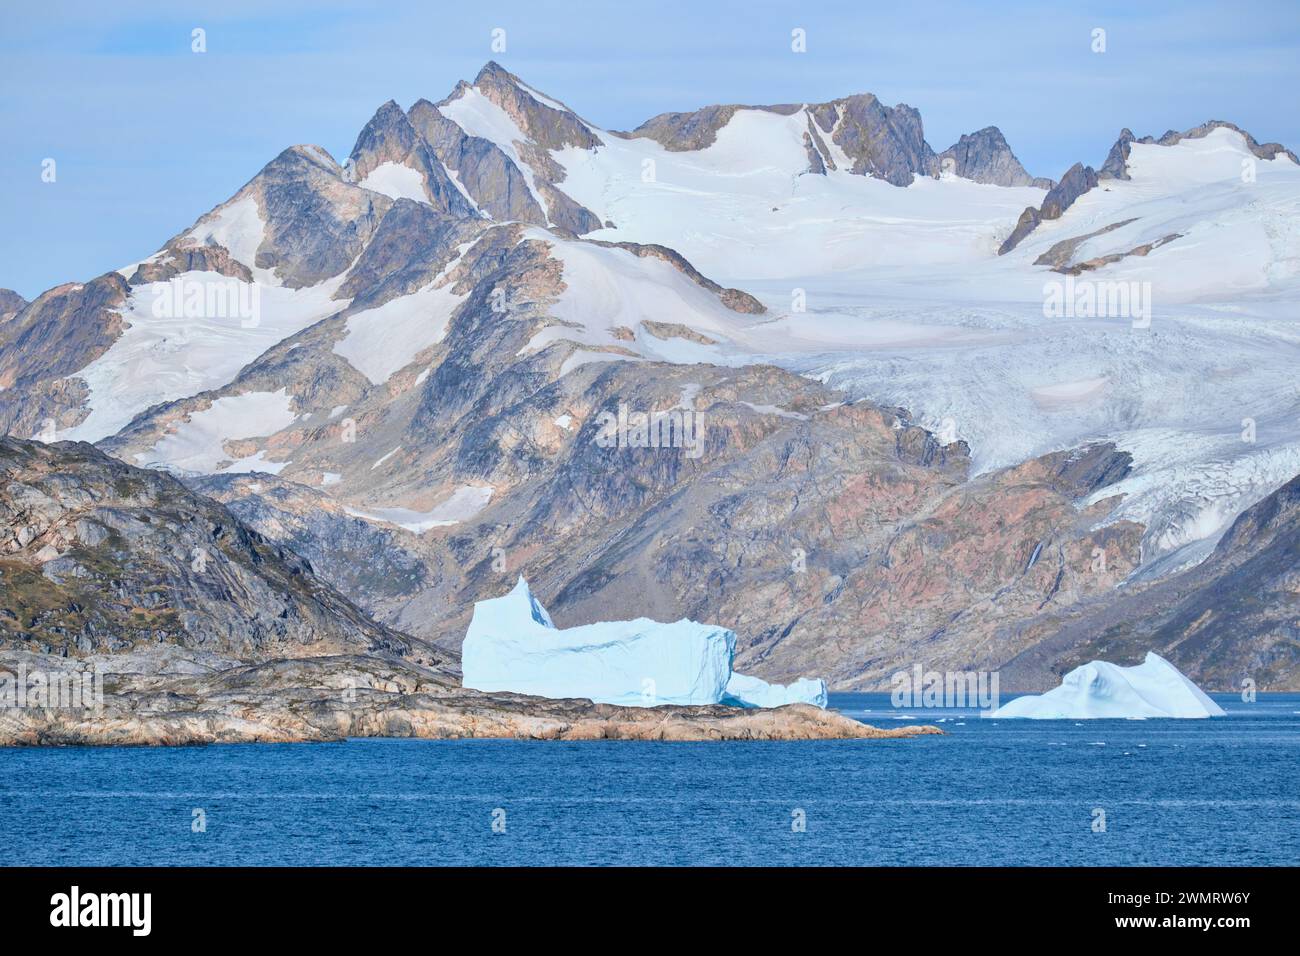 Große Eisberge schweben im strahlend blauen Meer neben einem massiven, zerklüfteten Berg, der mit Schnee und Eis bedeckt ist. Stockfoto